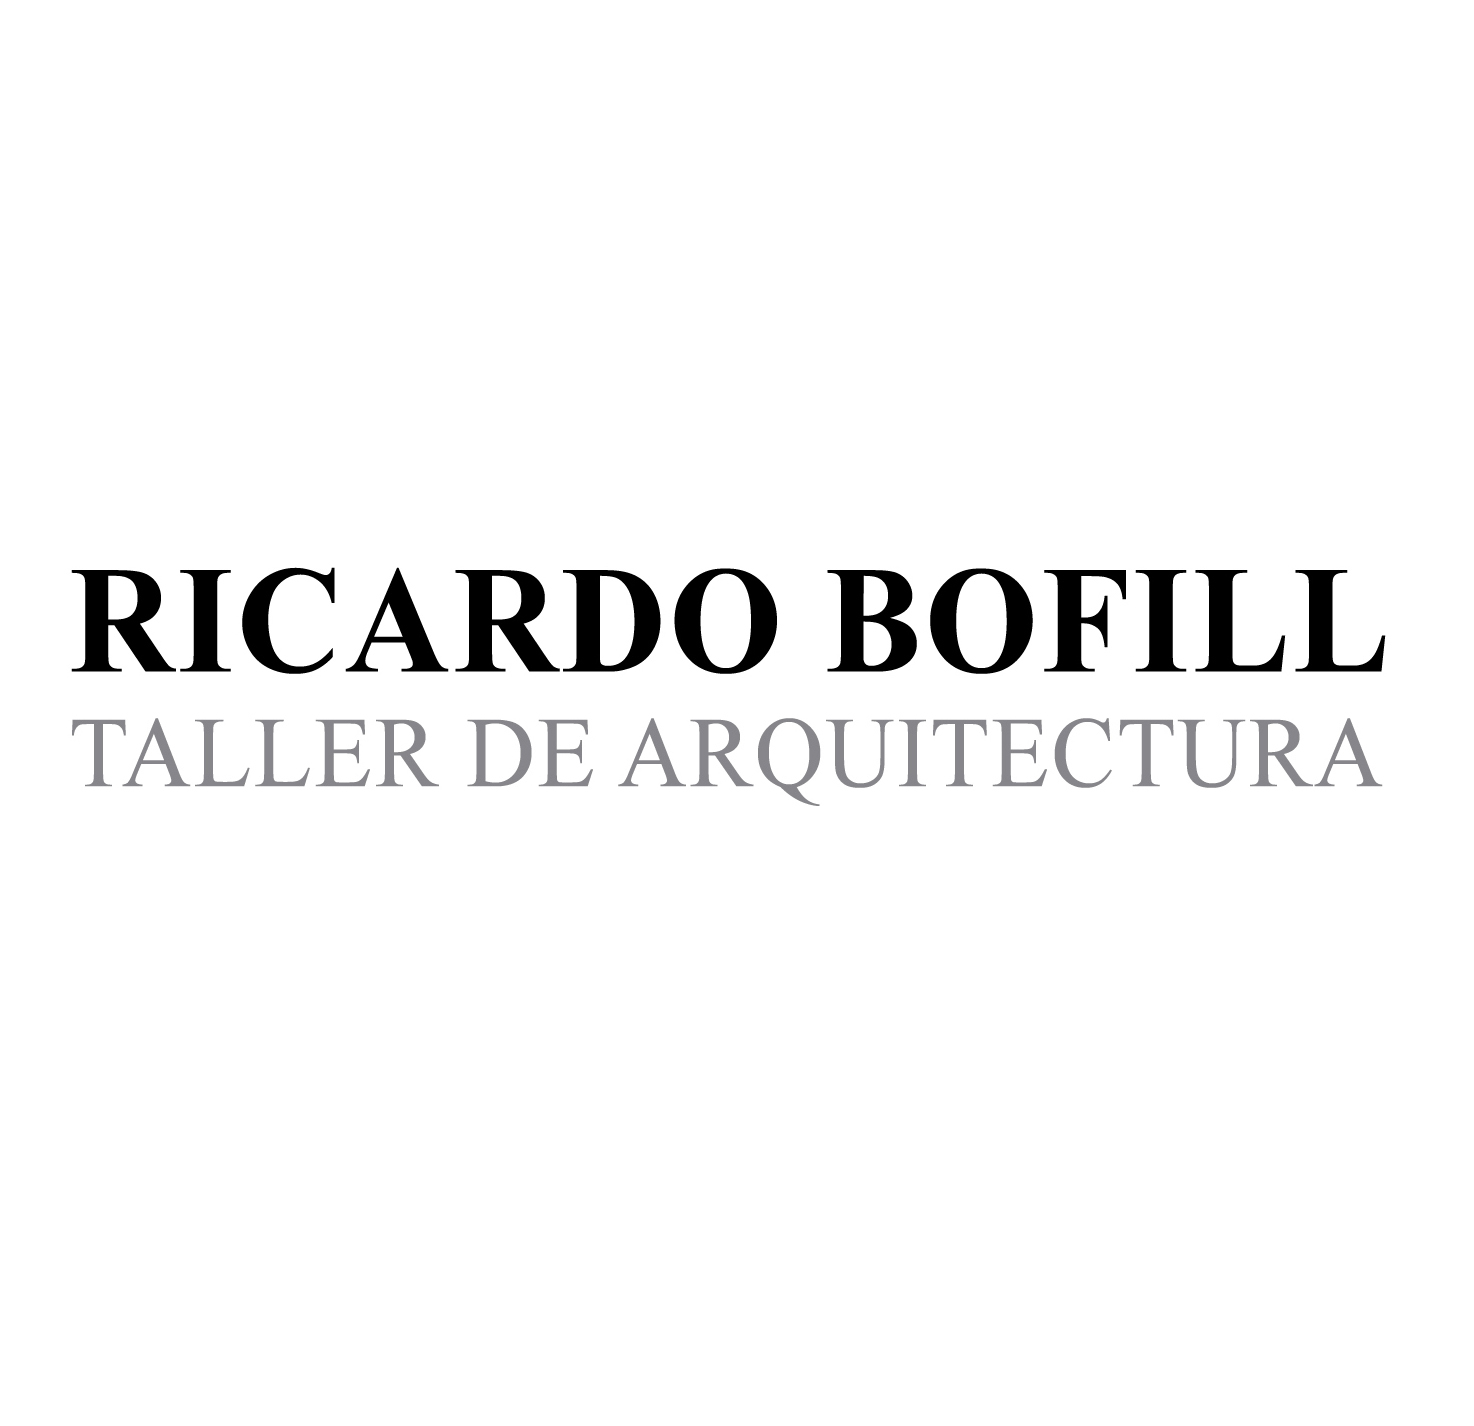 Ricardo Bofill Taller de Arquitectura 